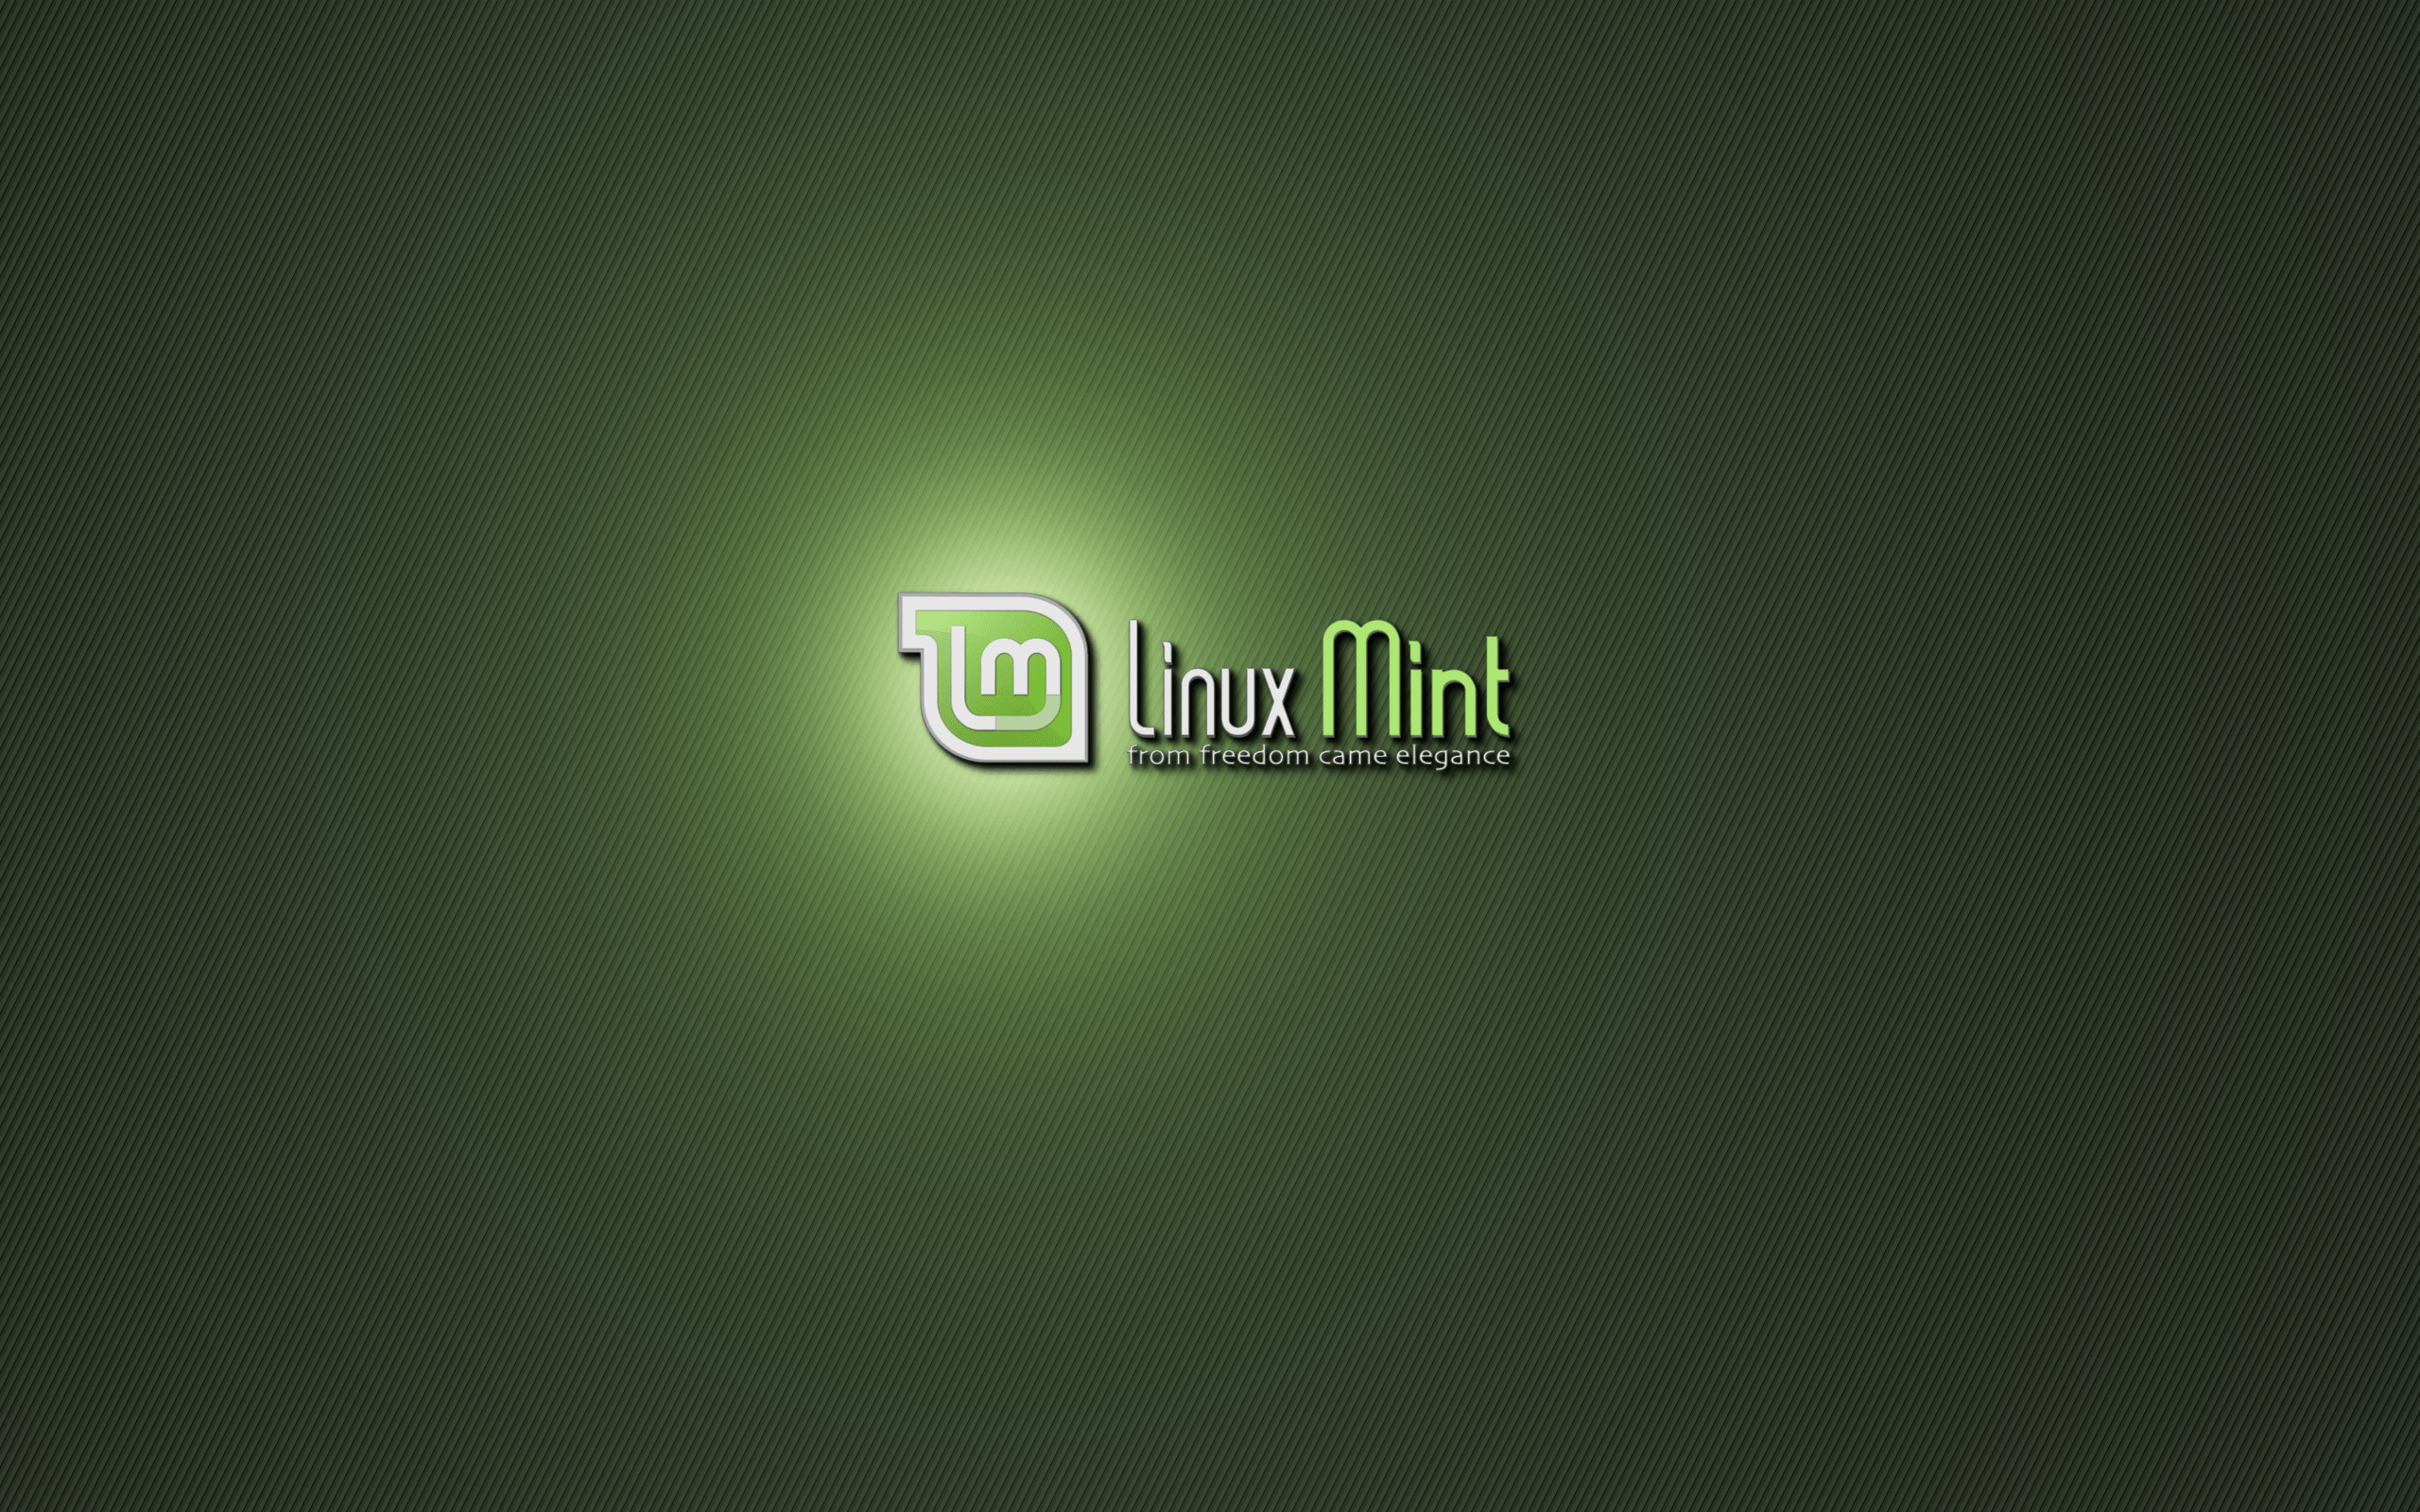 Fondo de pantalla de la semana (28 de abril al 4 de mayo) - ¡El resultado! - Linux Mint